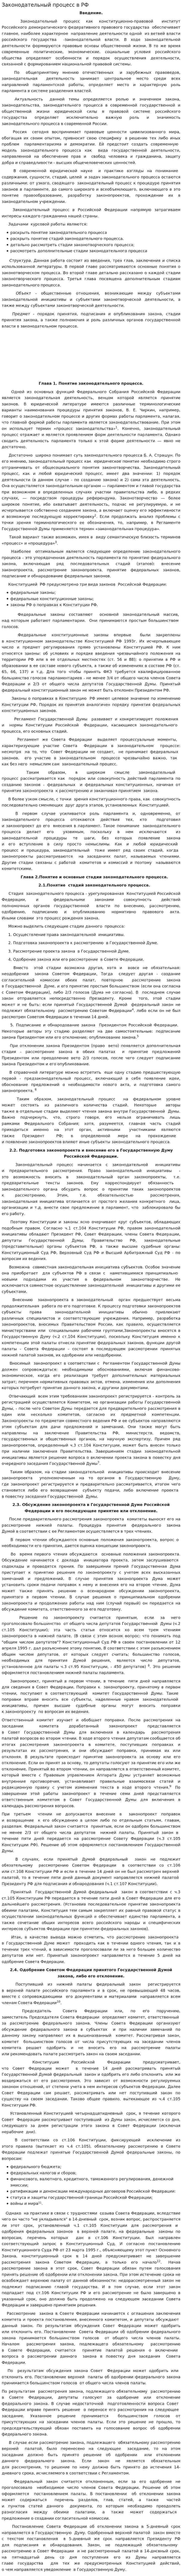 Законодательный процесс в РФ. 4